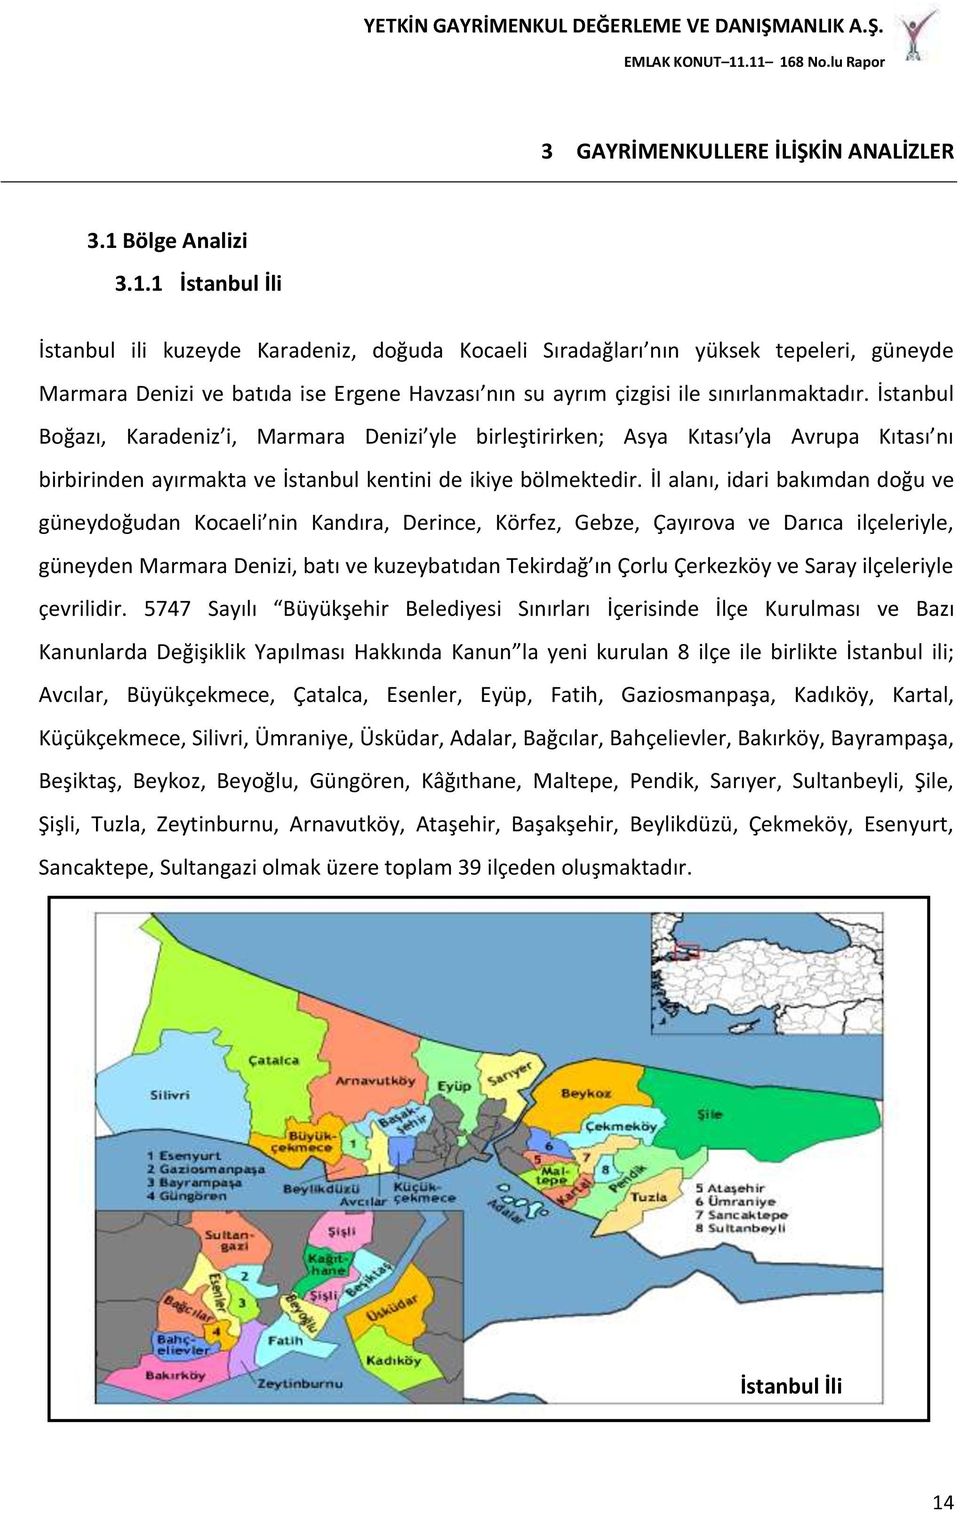 İstanbul Boğazı, Karadeniz i, Marmara Denizi yle birleştirirken; Asya Kıtası yla Avrupa Kıtası nı birbirinden ayırmakta ve İstanbul kentini de ikiye bölmektedir.